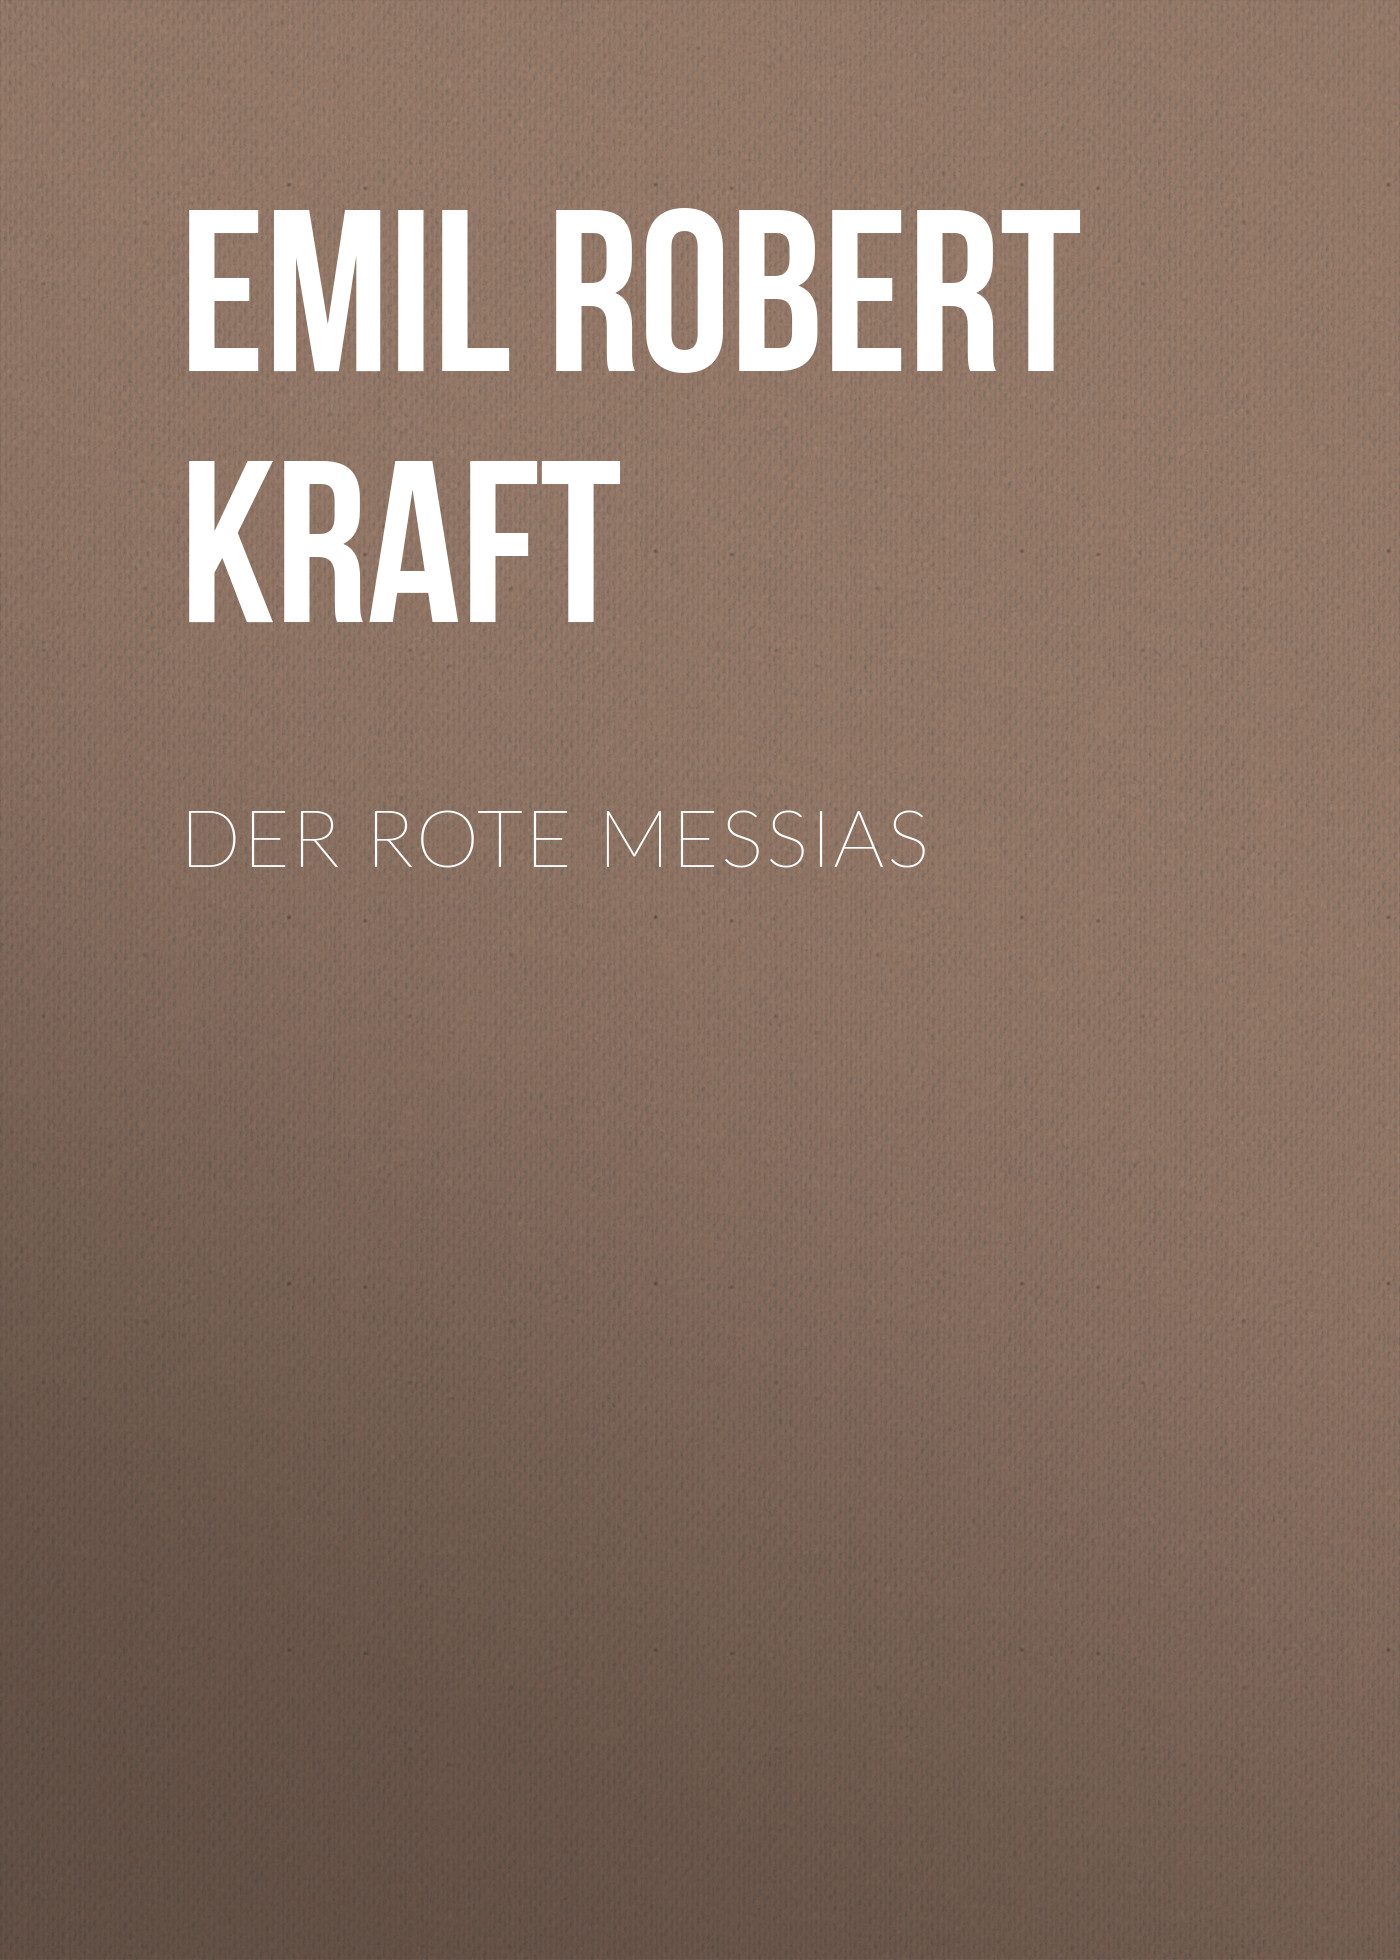 Книга Der rote Messias из серии , созданная Emil Robert Kraft, может относится к жанру Зарубежная классика. Стоимость электронной книги Der rote Messias с идентификатором 48633164 составляет 0 руб.